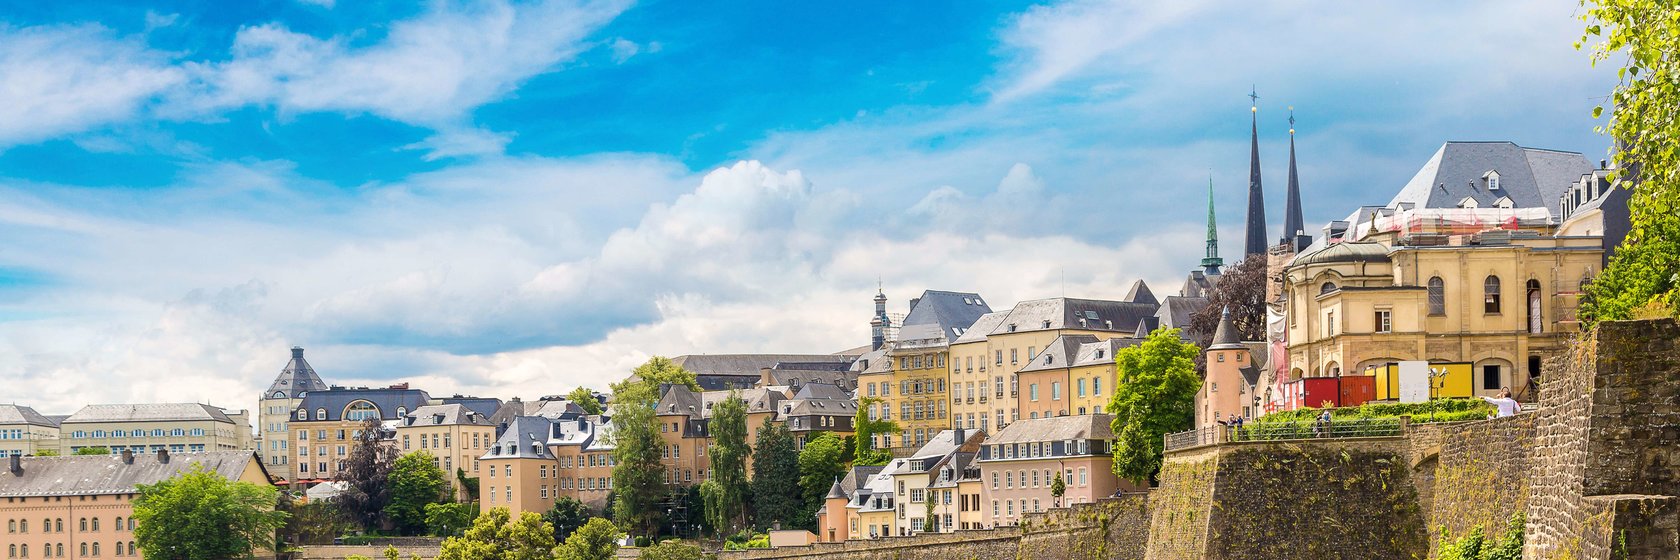 Ubytování Luxemburg